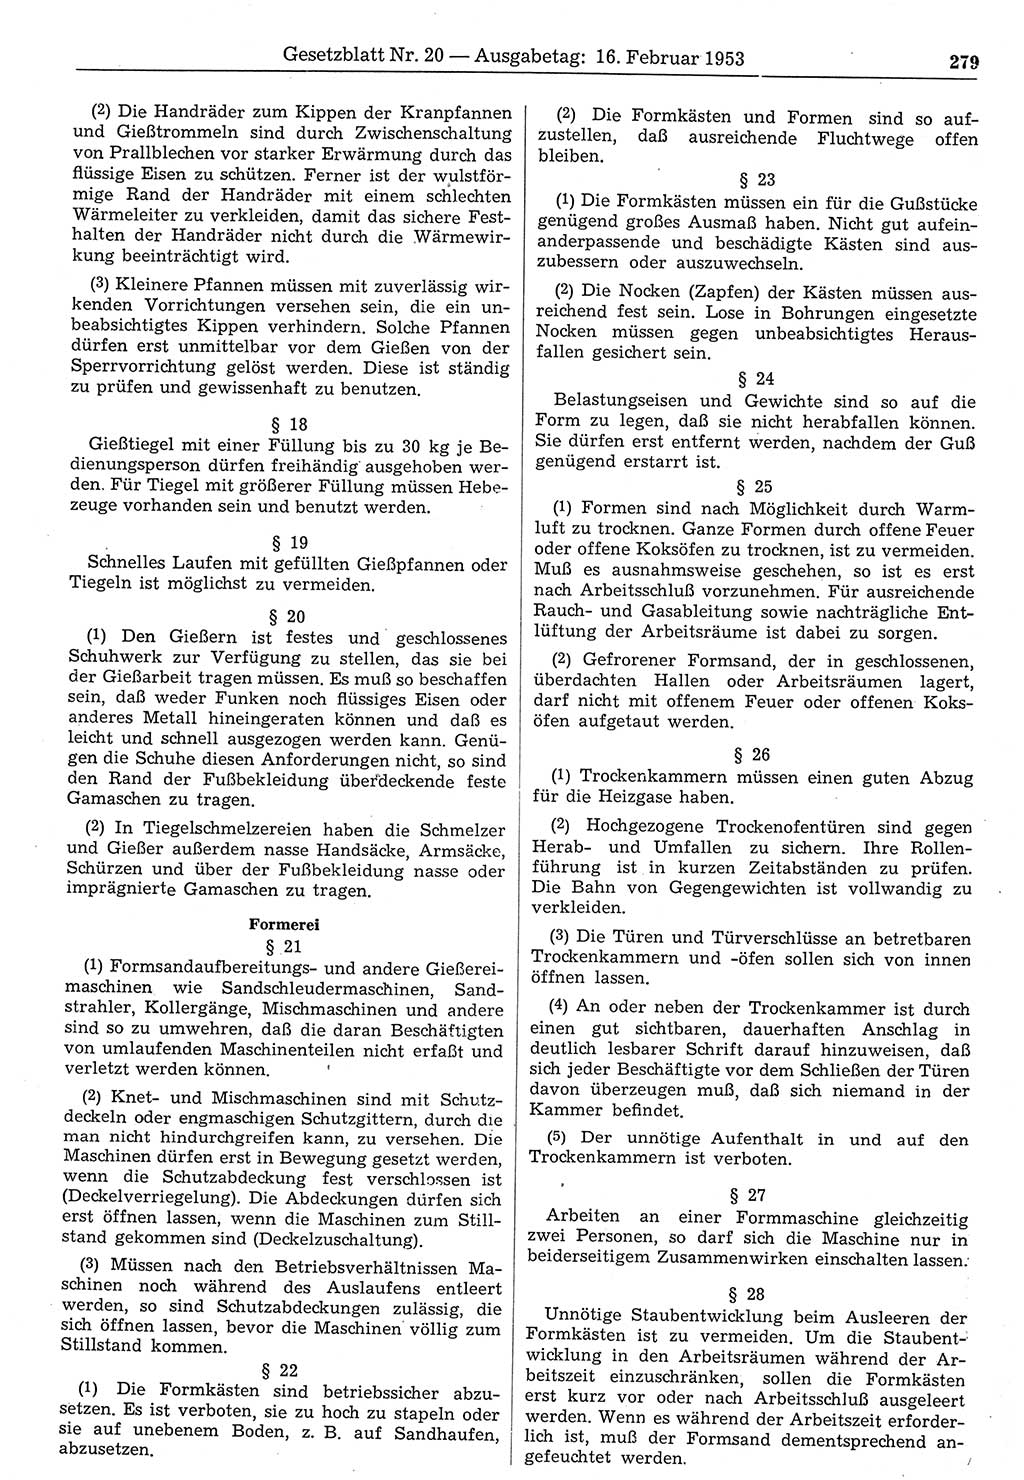 Gesetzblatt (GBl.) der Deutschen Demokratischen Republik (DDR) 1953, Seite 279 (GBl. DDR 1953, S. 279)